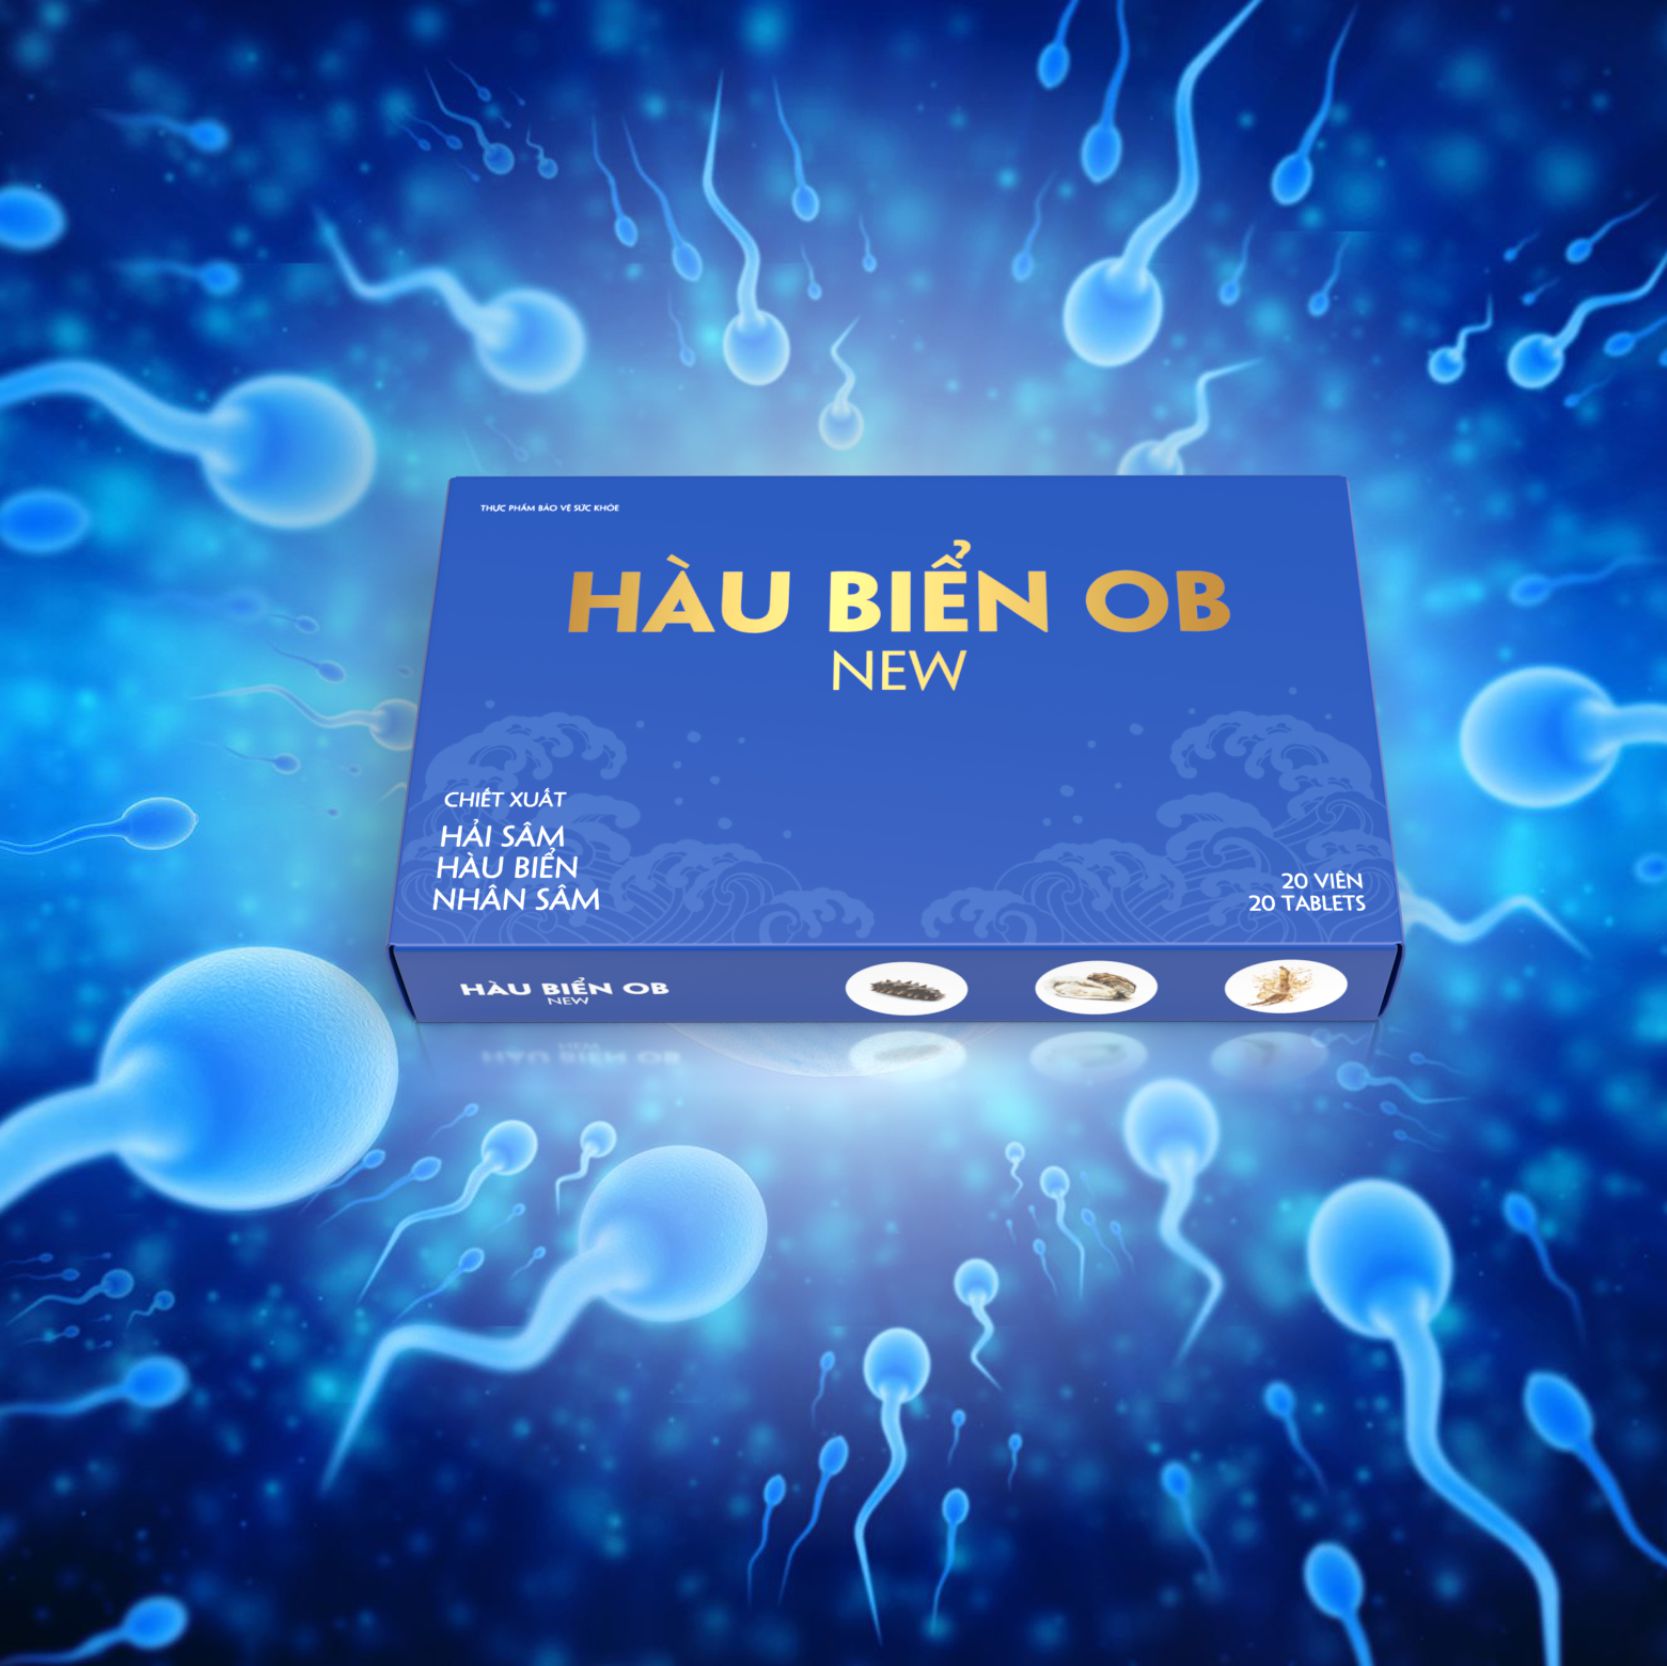 hau-bien-ob-new (3)